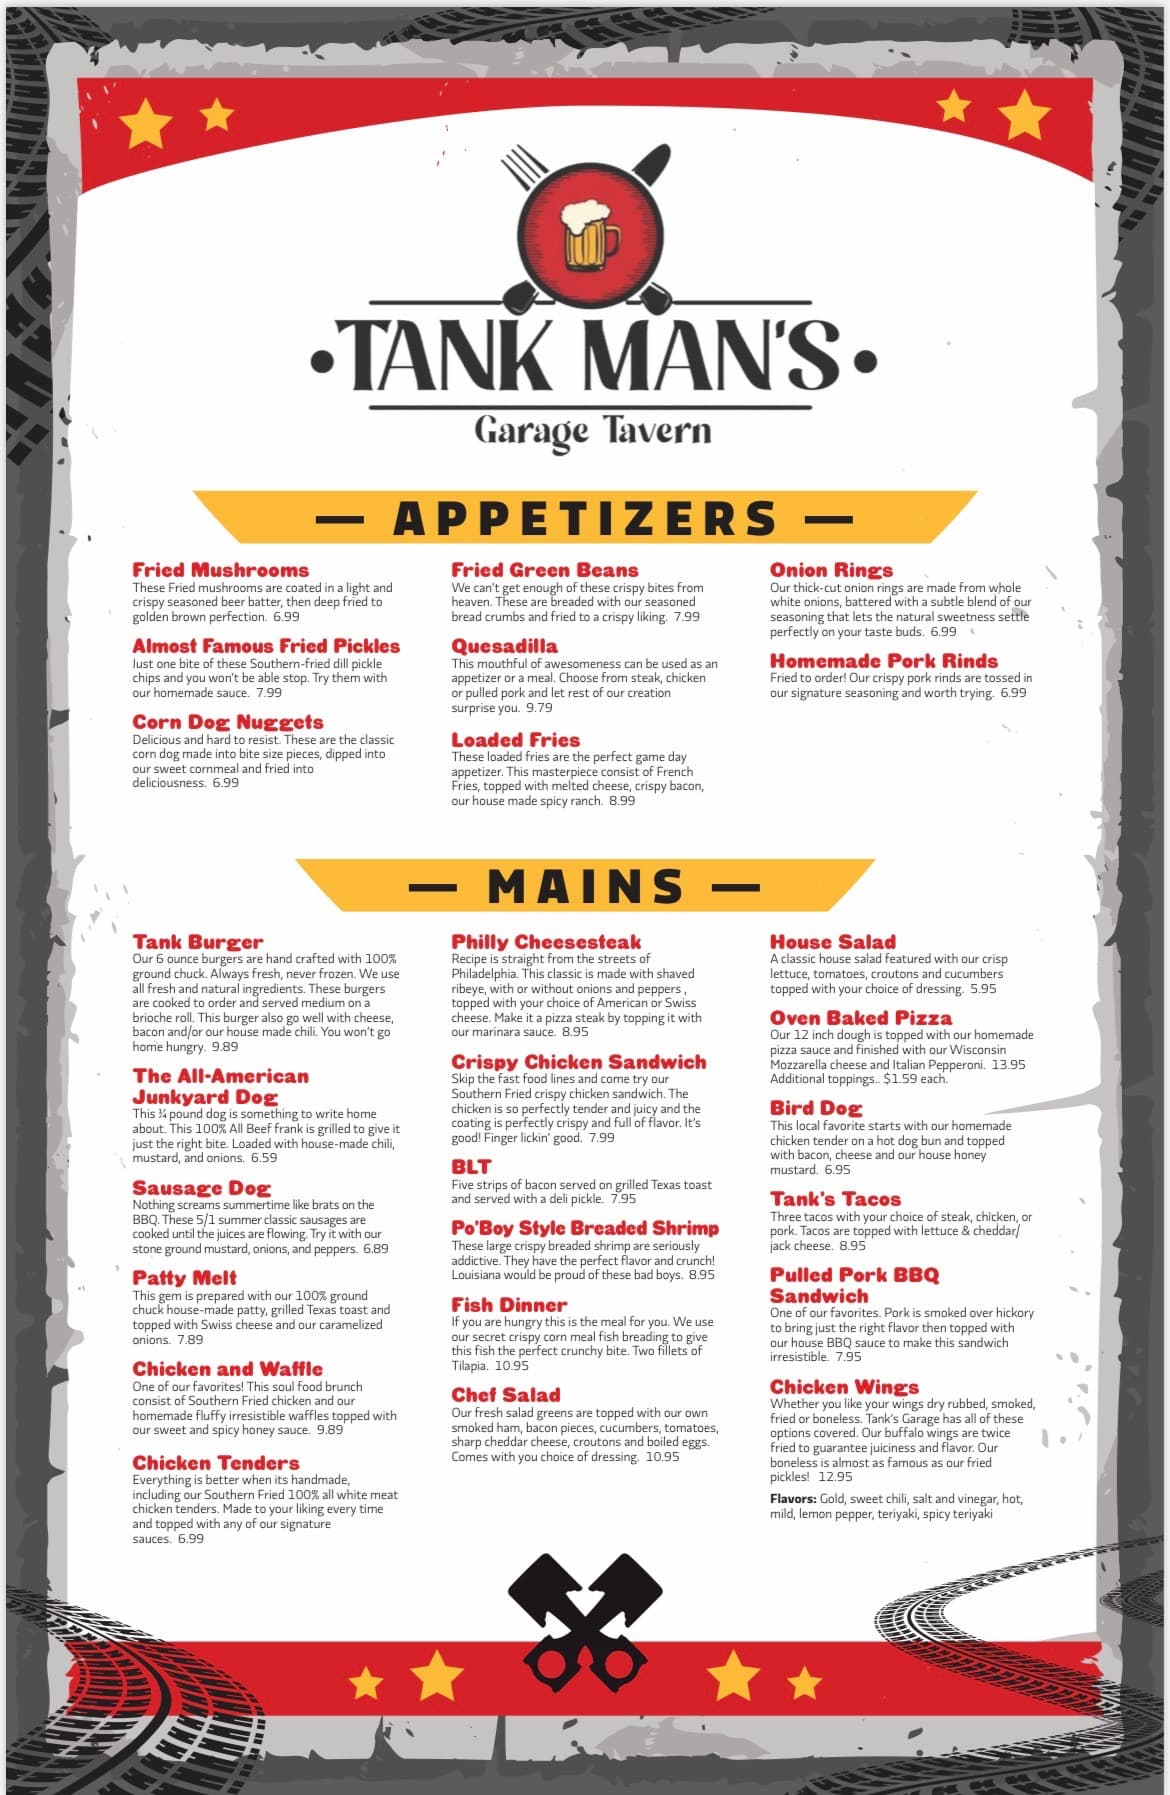 Tank Man's Garage Tavern